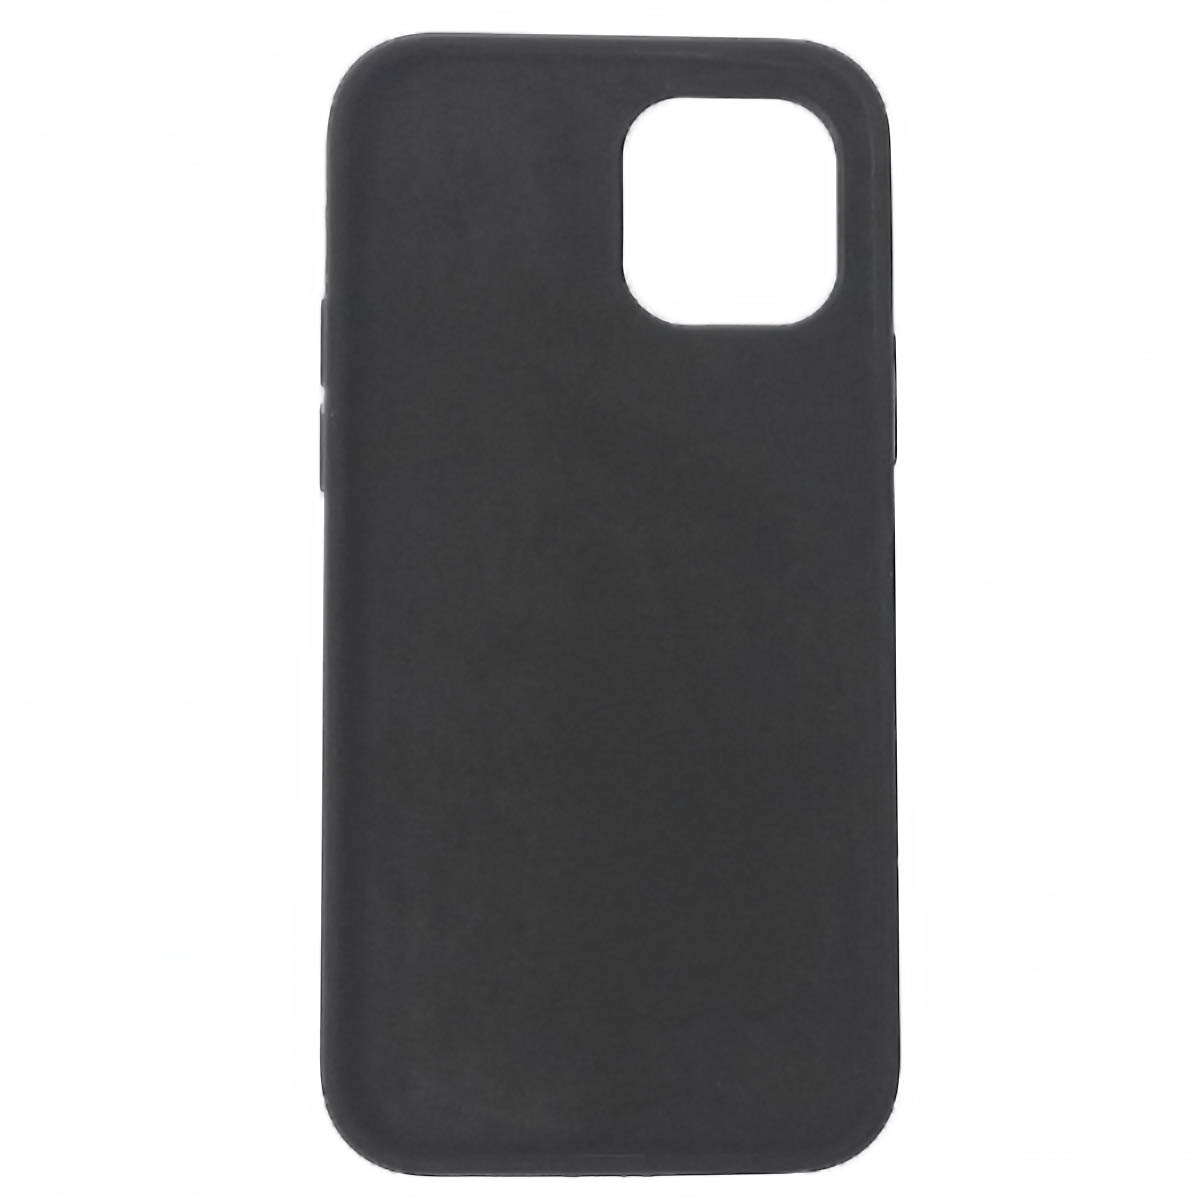 Чехол накладка Silicon Case для APPLE iPhone 12, iPhone 12 Pro, силикон, бархат, цвет черный